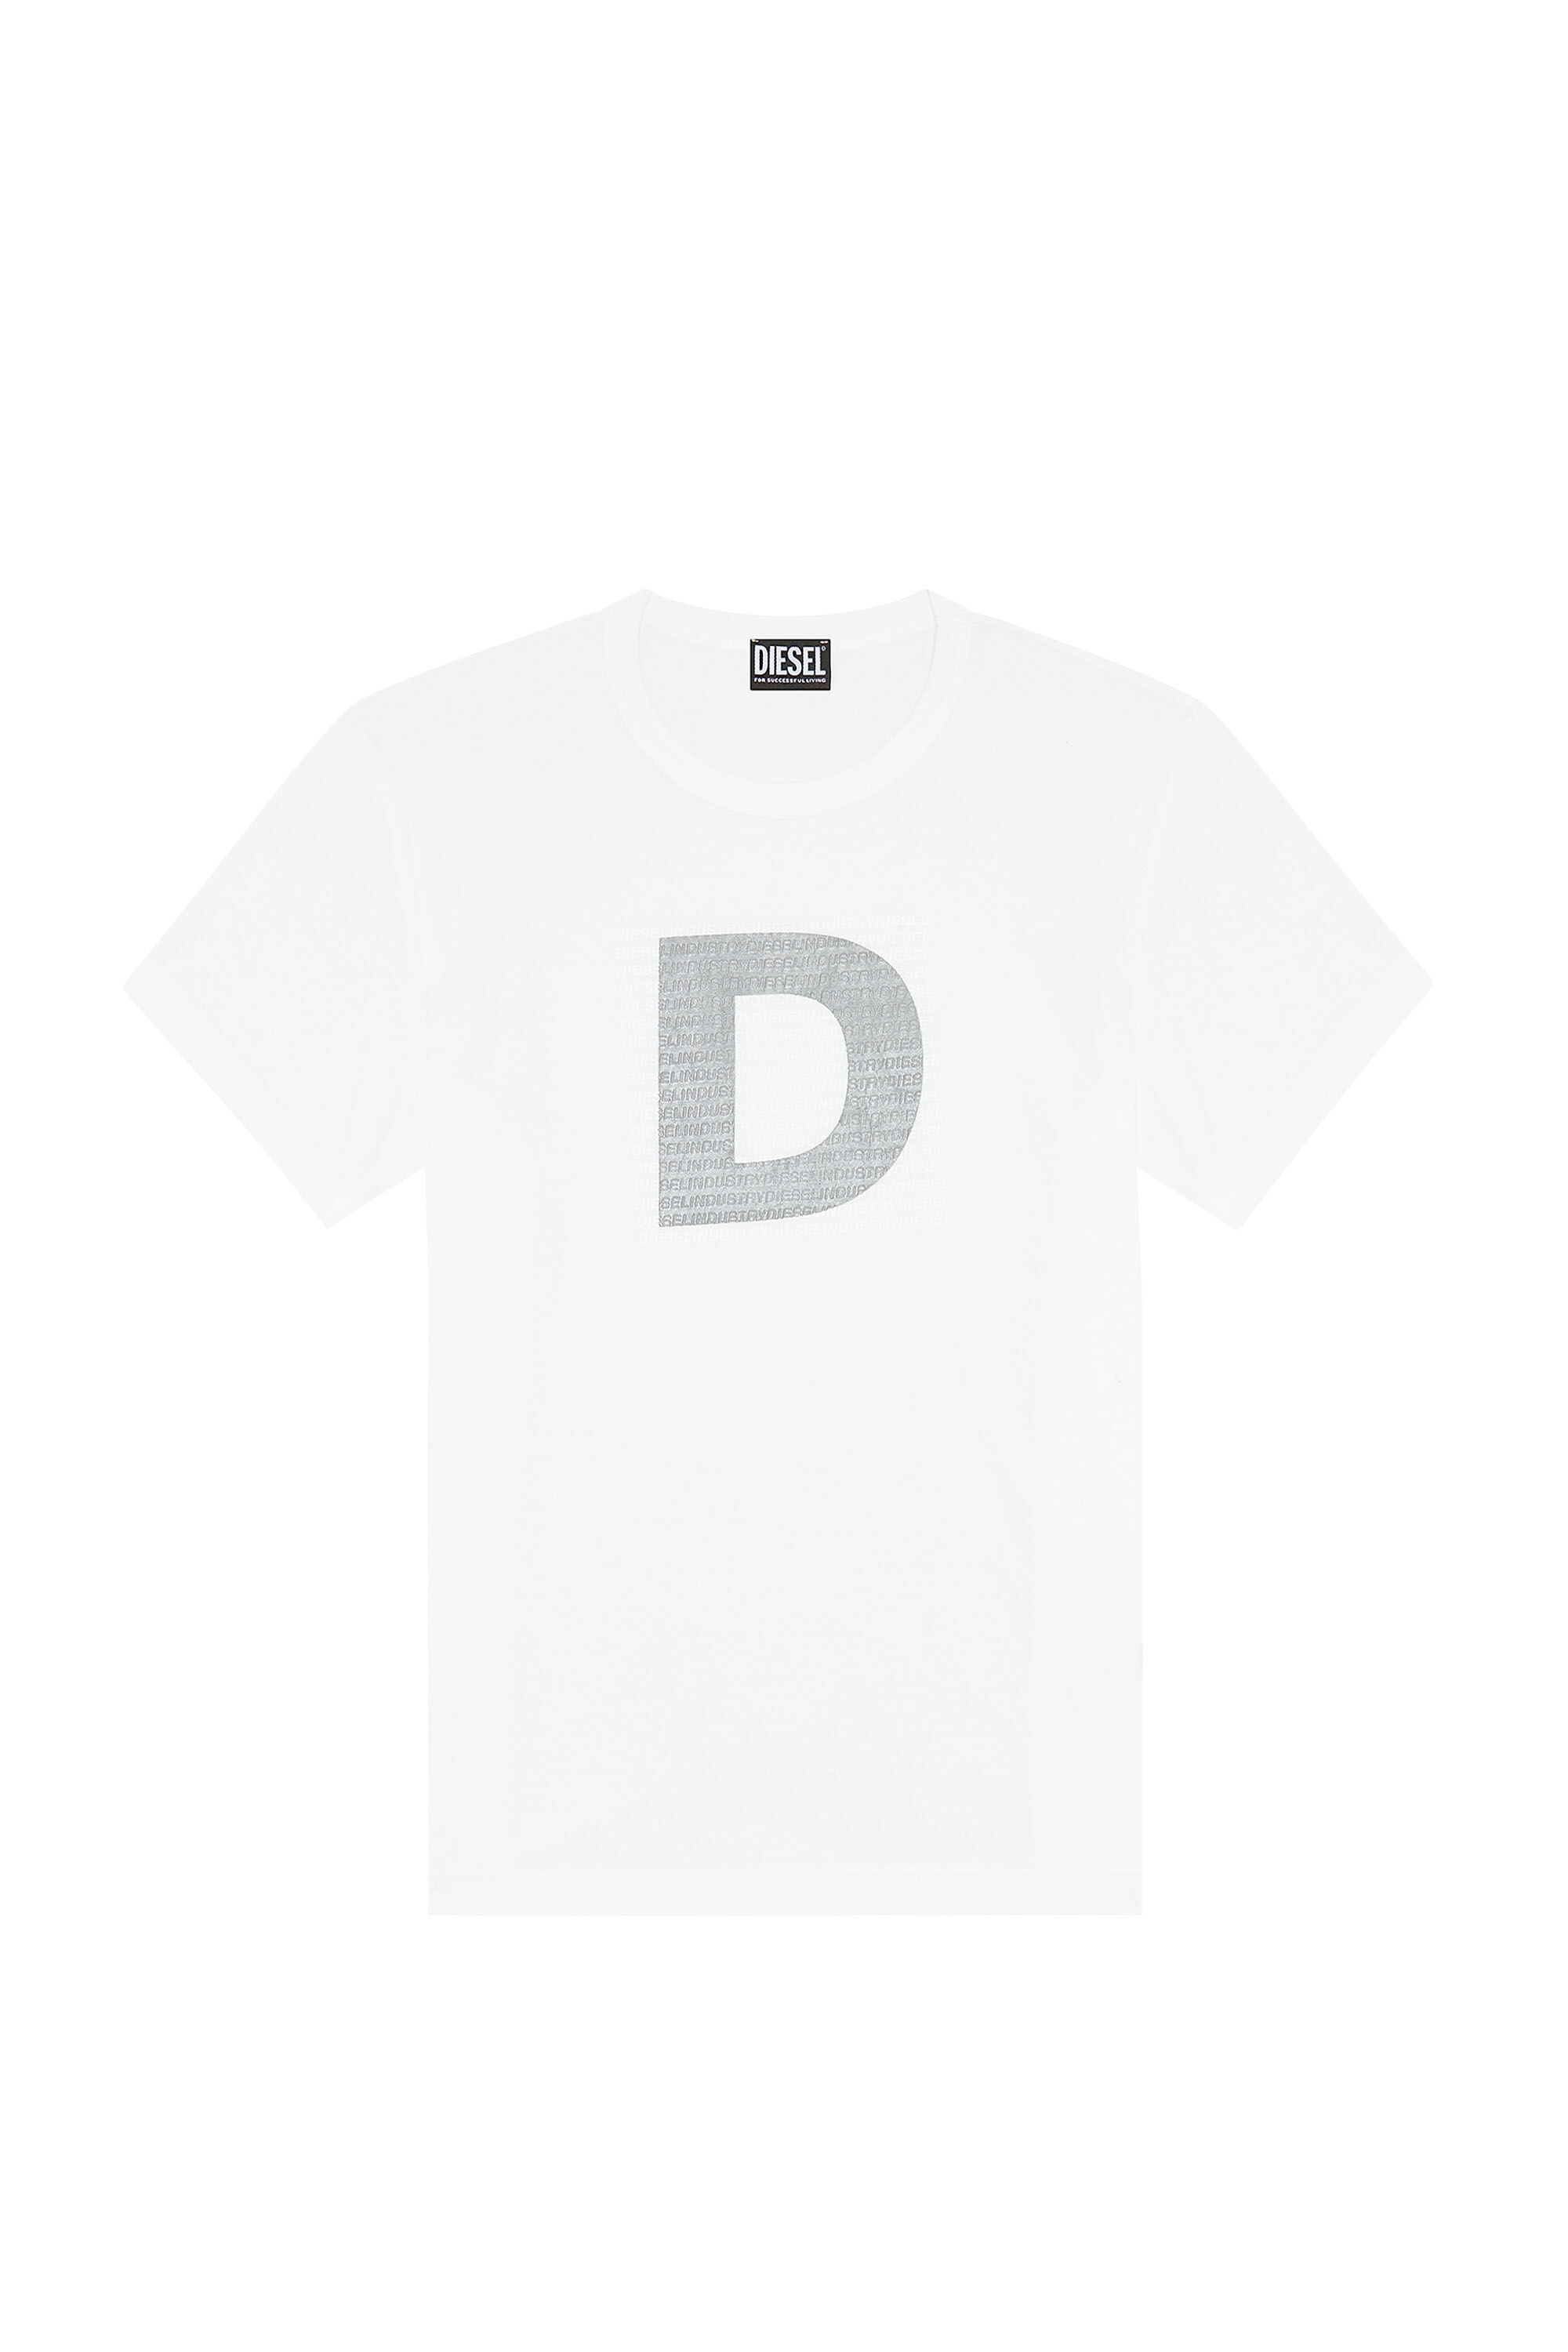 Diesel - T-DIEGOR-COL, White - Image 2